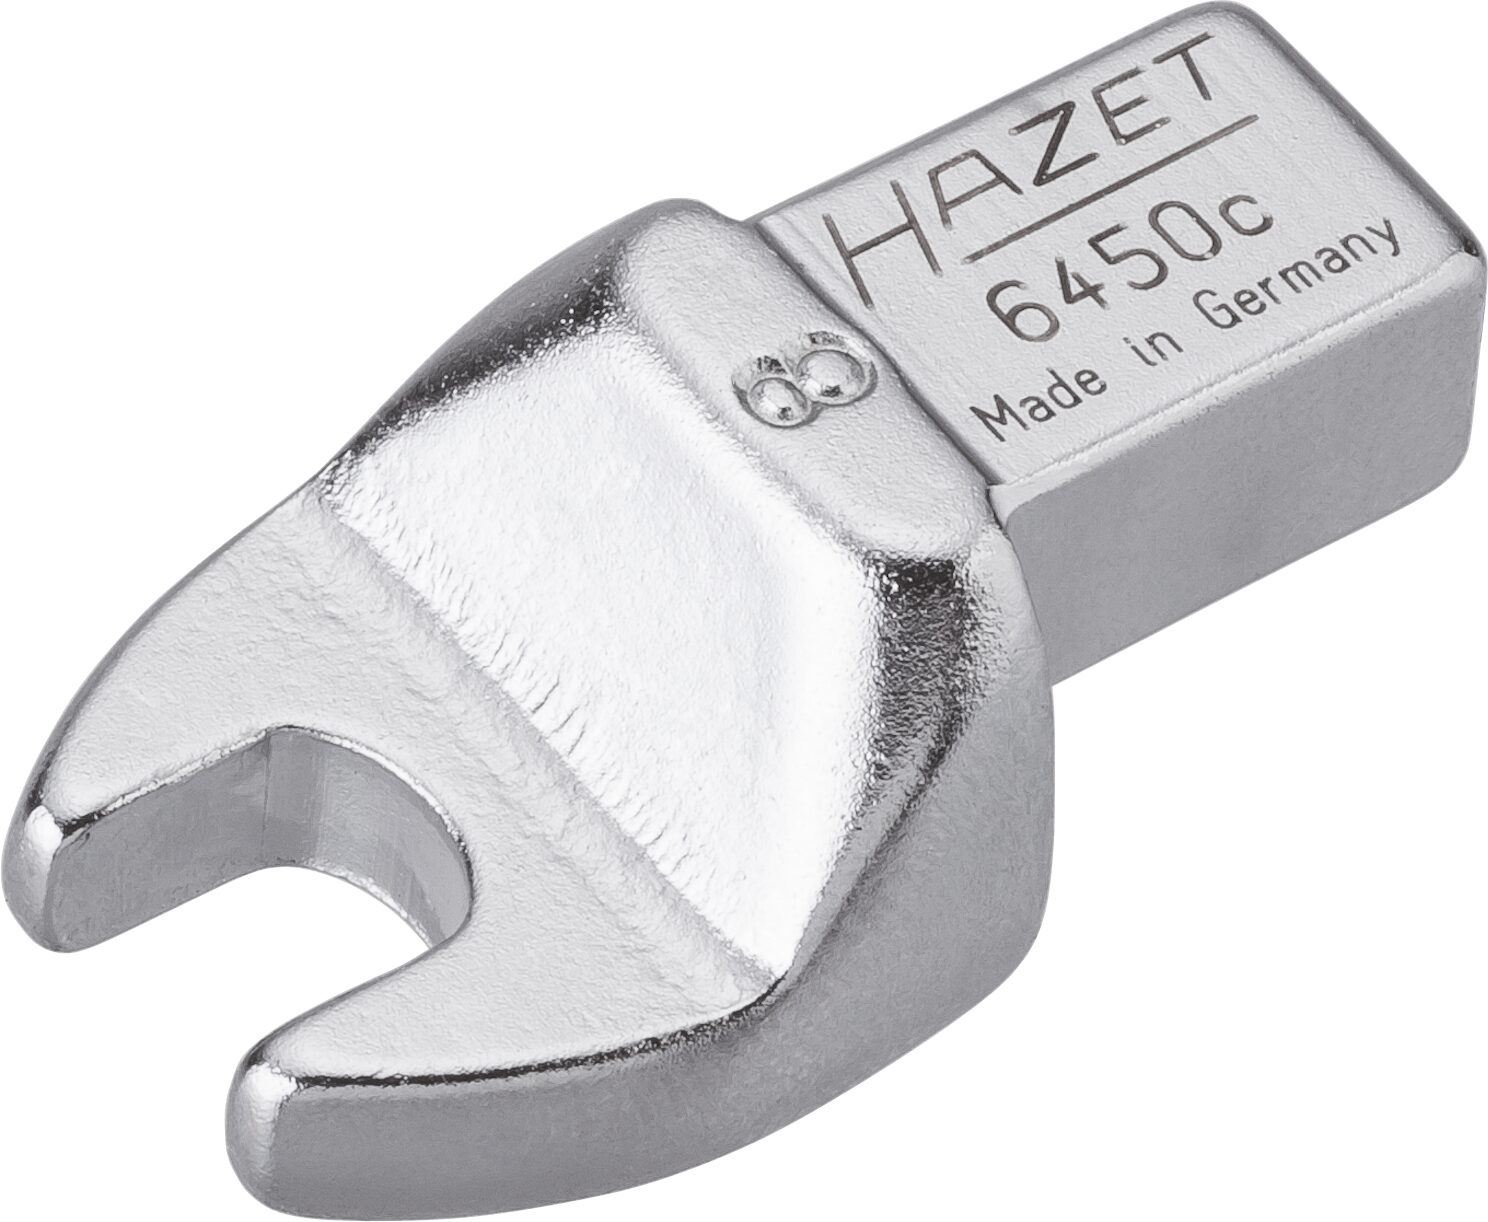 HAZET Einsteck-Maulschlüssel 6450C-8 · Einsteck-Vierkant 9 x 12 mm · Außen Sechskant Profil · 8 mm